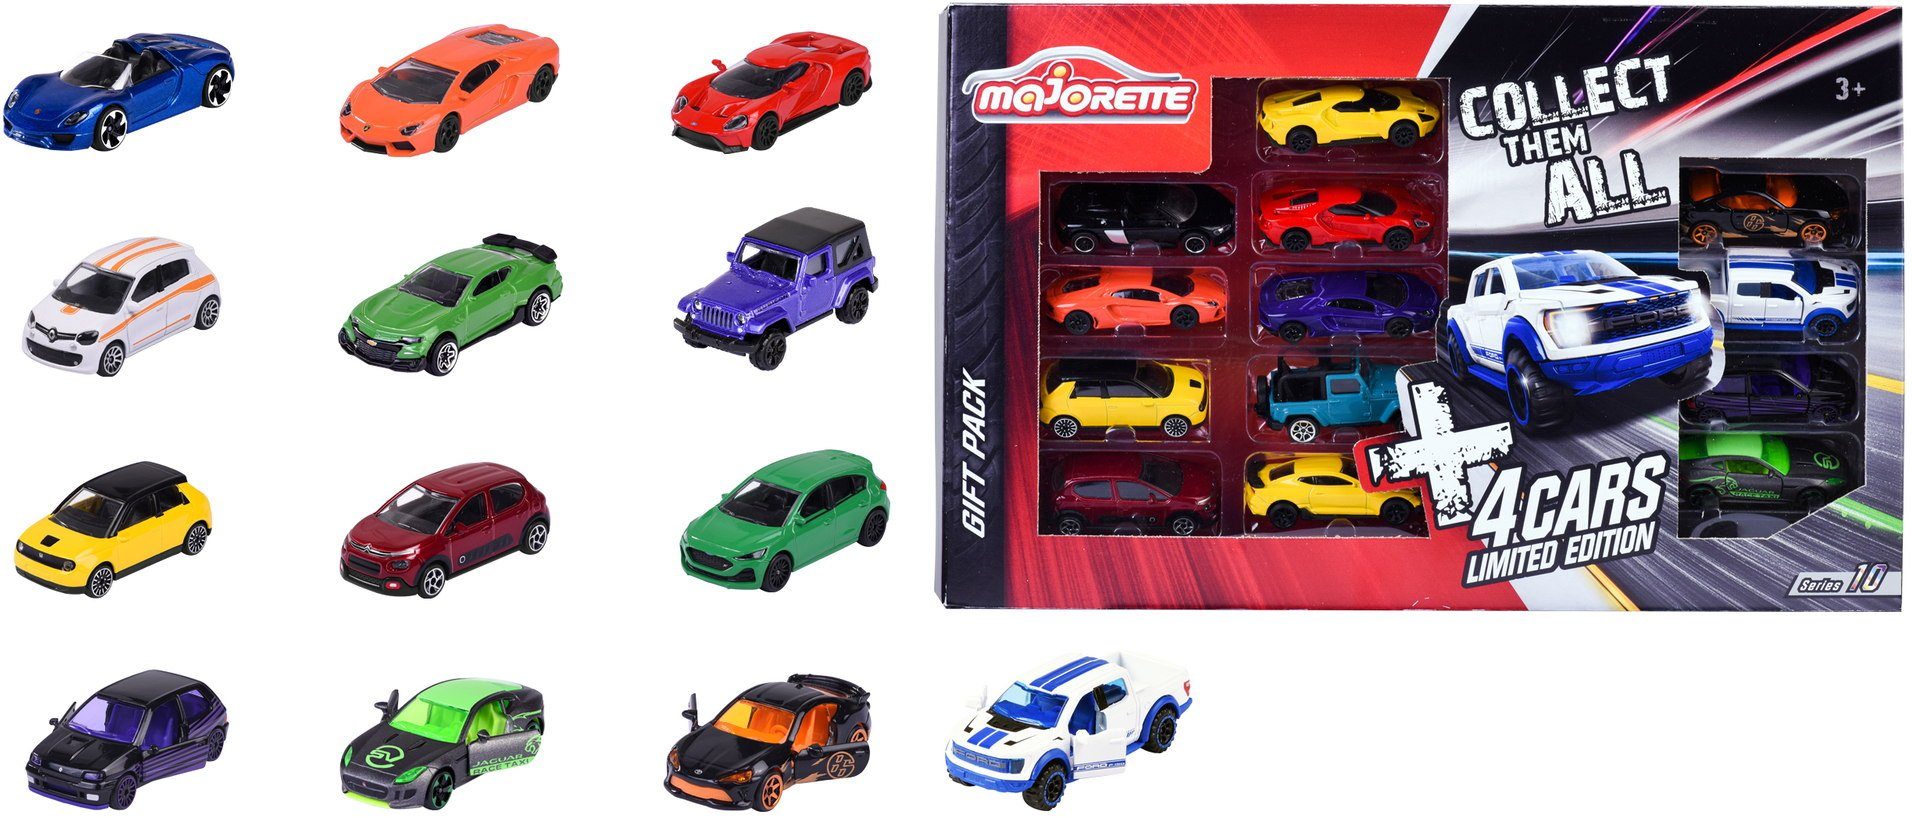 majORETTE Spielzeug-Auto Spielzeugauto Limited Edition 10 9 Autos und 4 limitierte 212054036